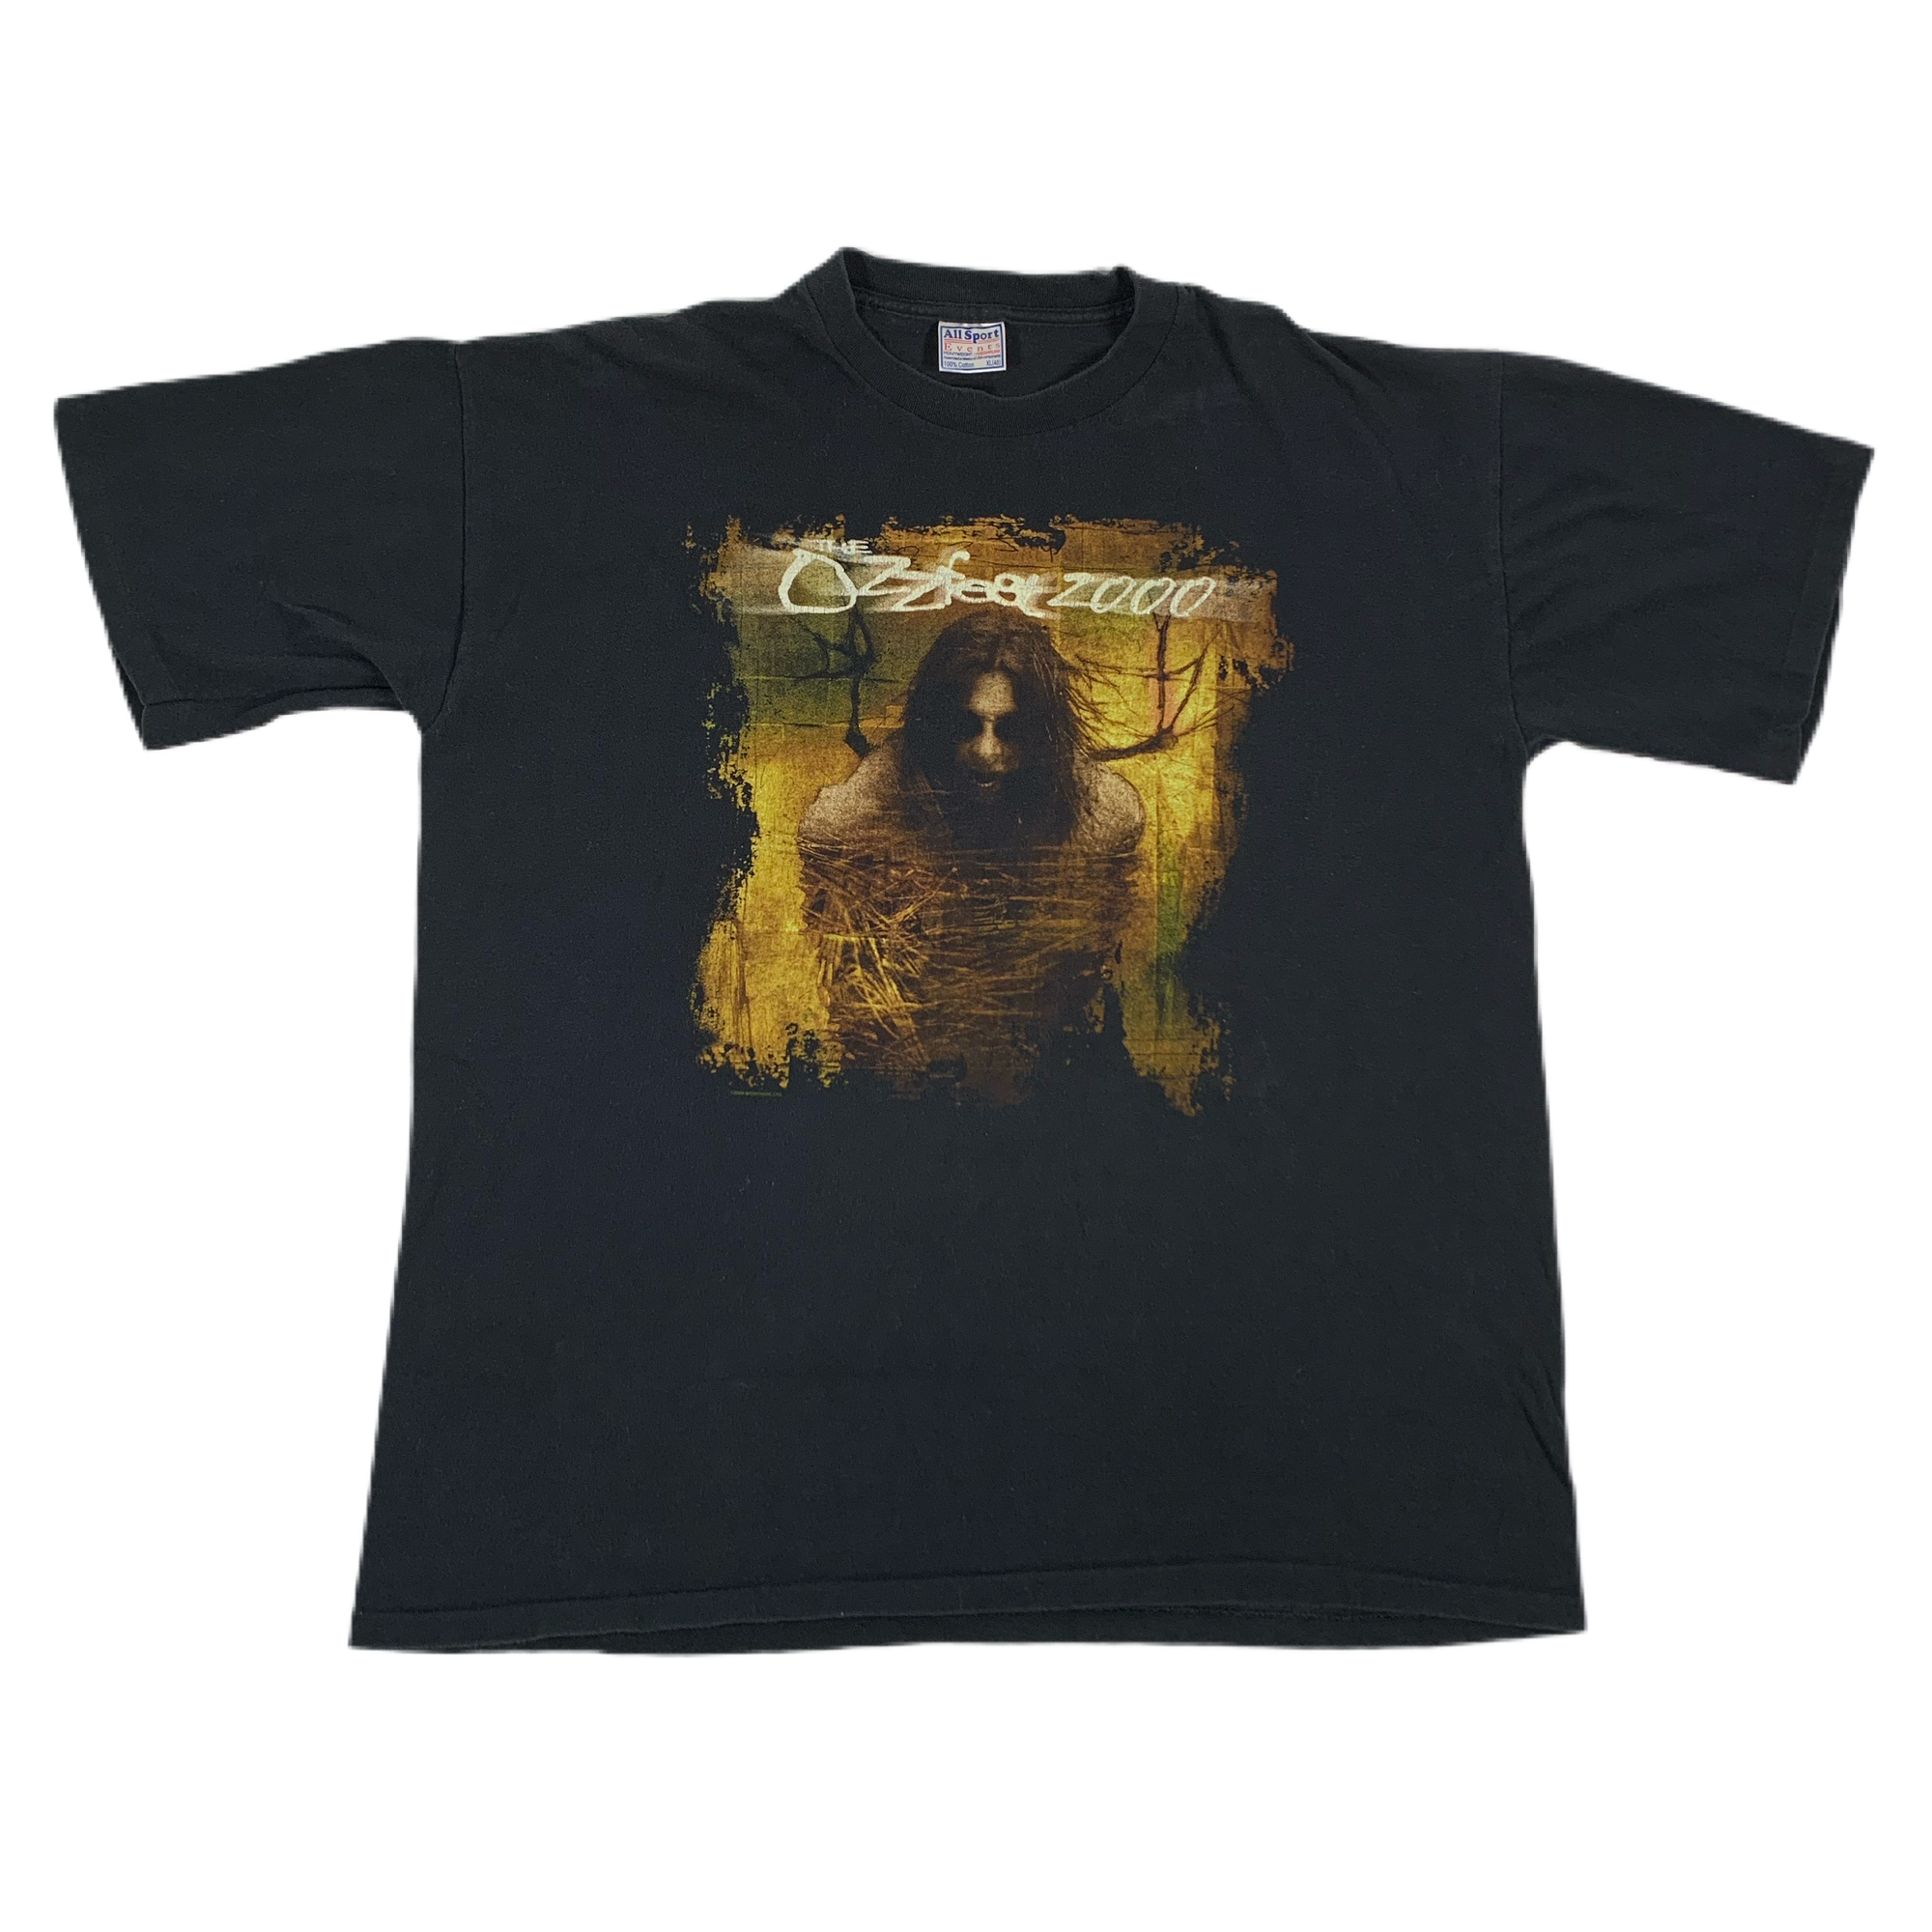 Vintage Ozzfest "2000" T-Shirt - jointcustodydc